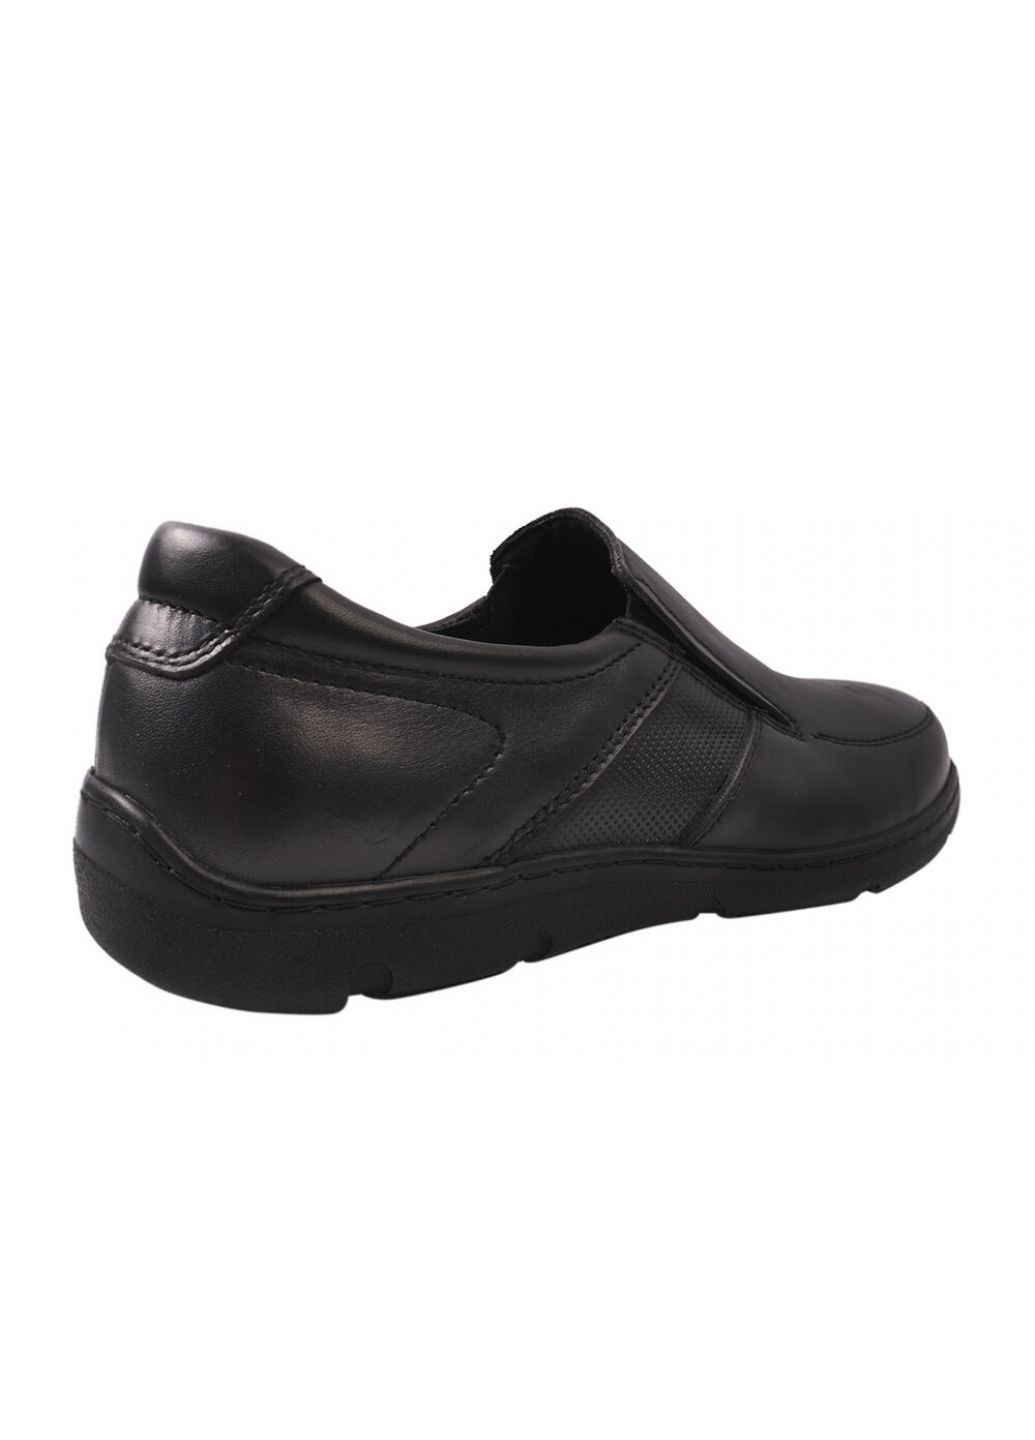 Черные туфли мужские из натуральной кожи, на низком ходу, черные, украина Konors